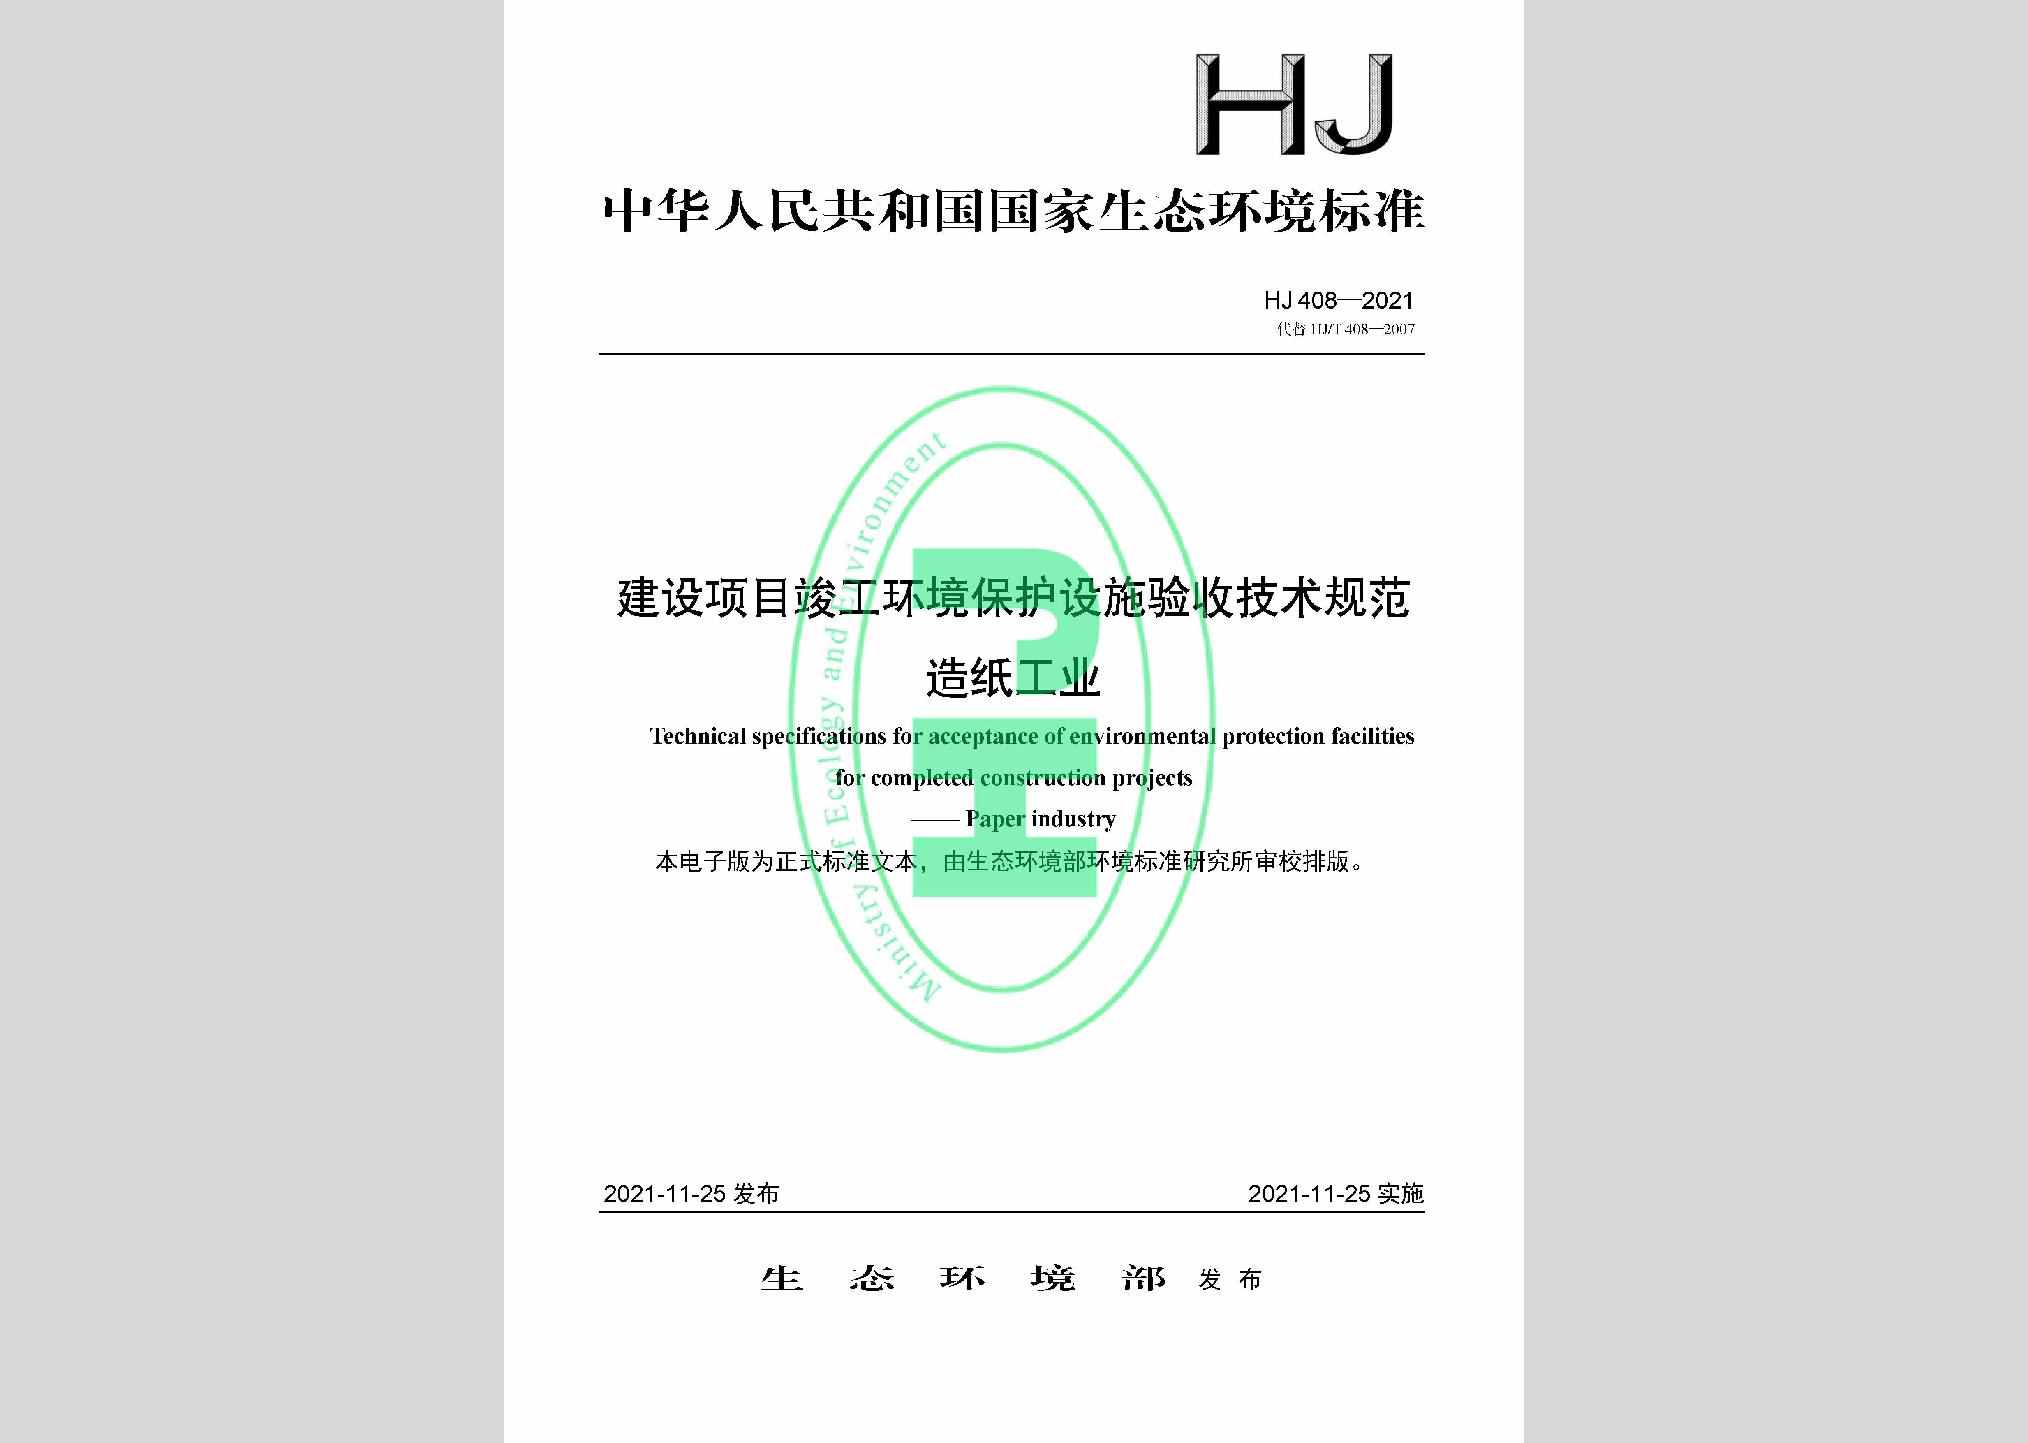 HJ408-2021：建设项目竣工环境保护设施验收技术规范造纸工业